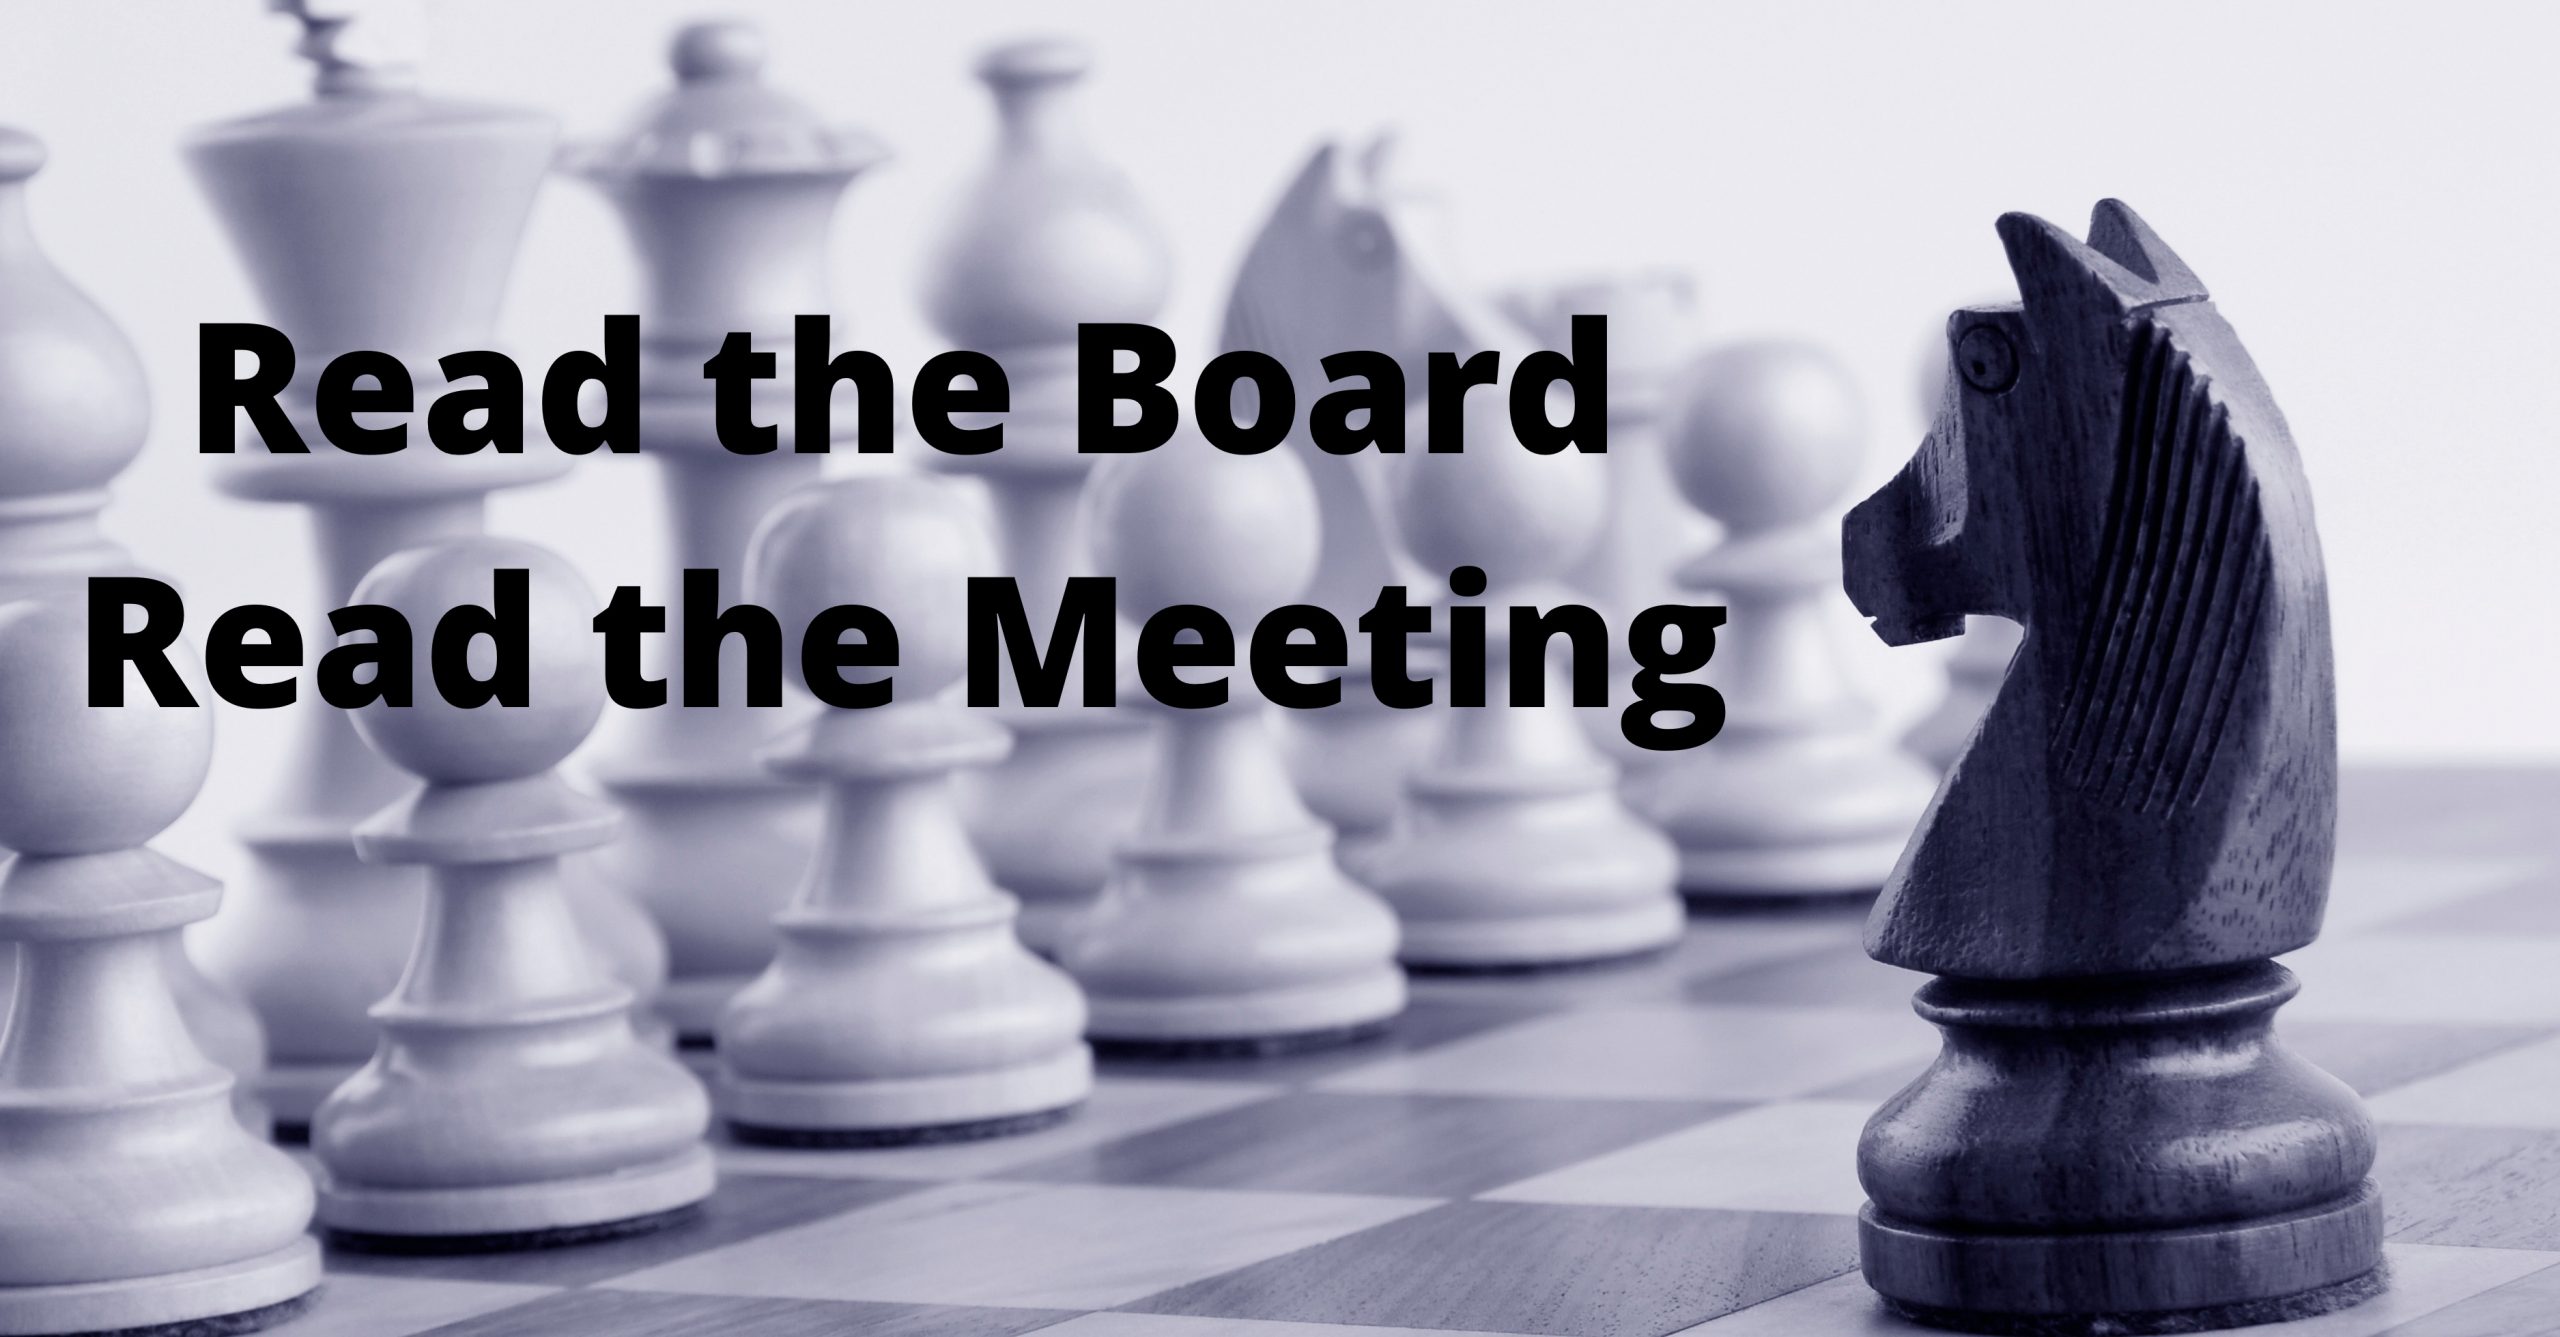 chess & chairing meetings similarities